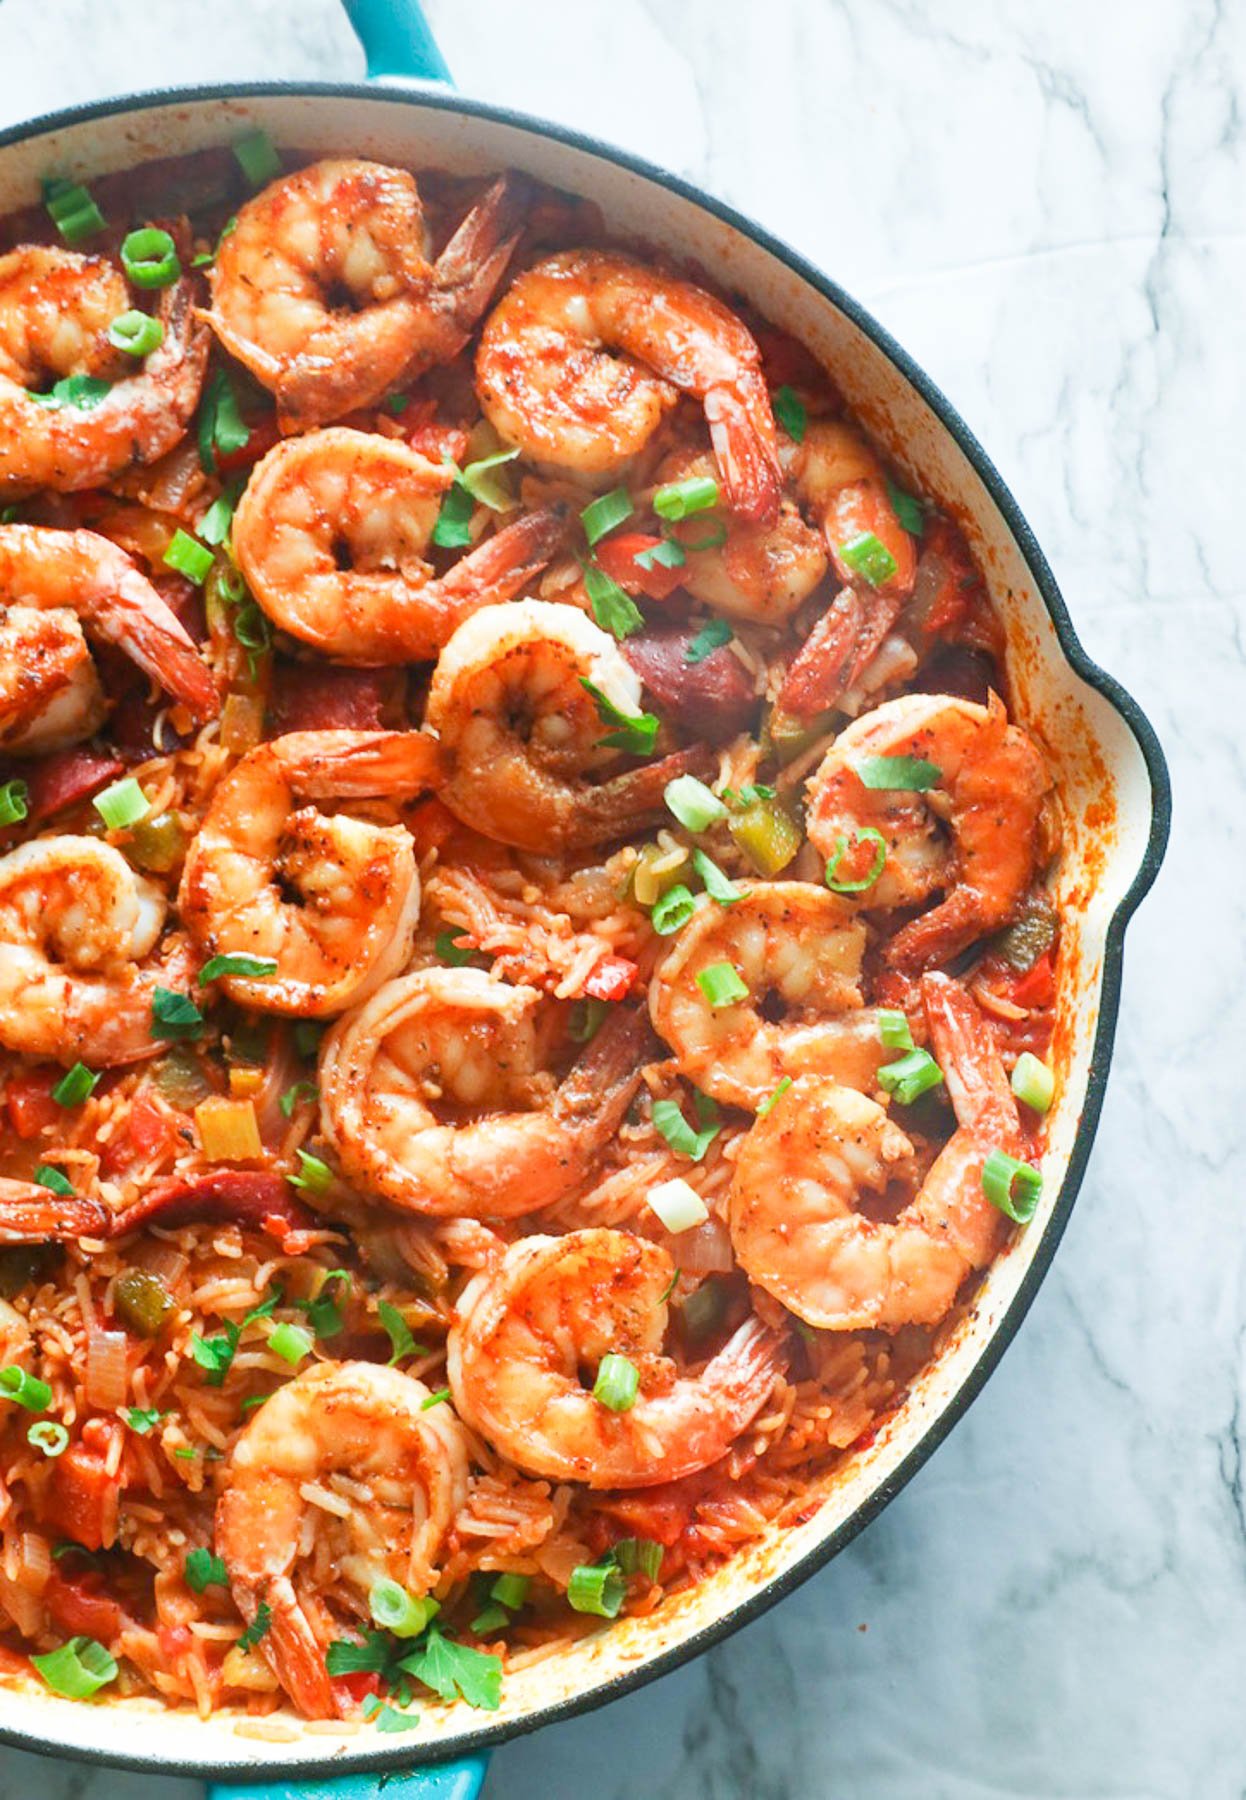 Shrimp Jambalaya – Crevettes et saucisses juteuses, assaisonnements créoles